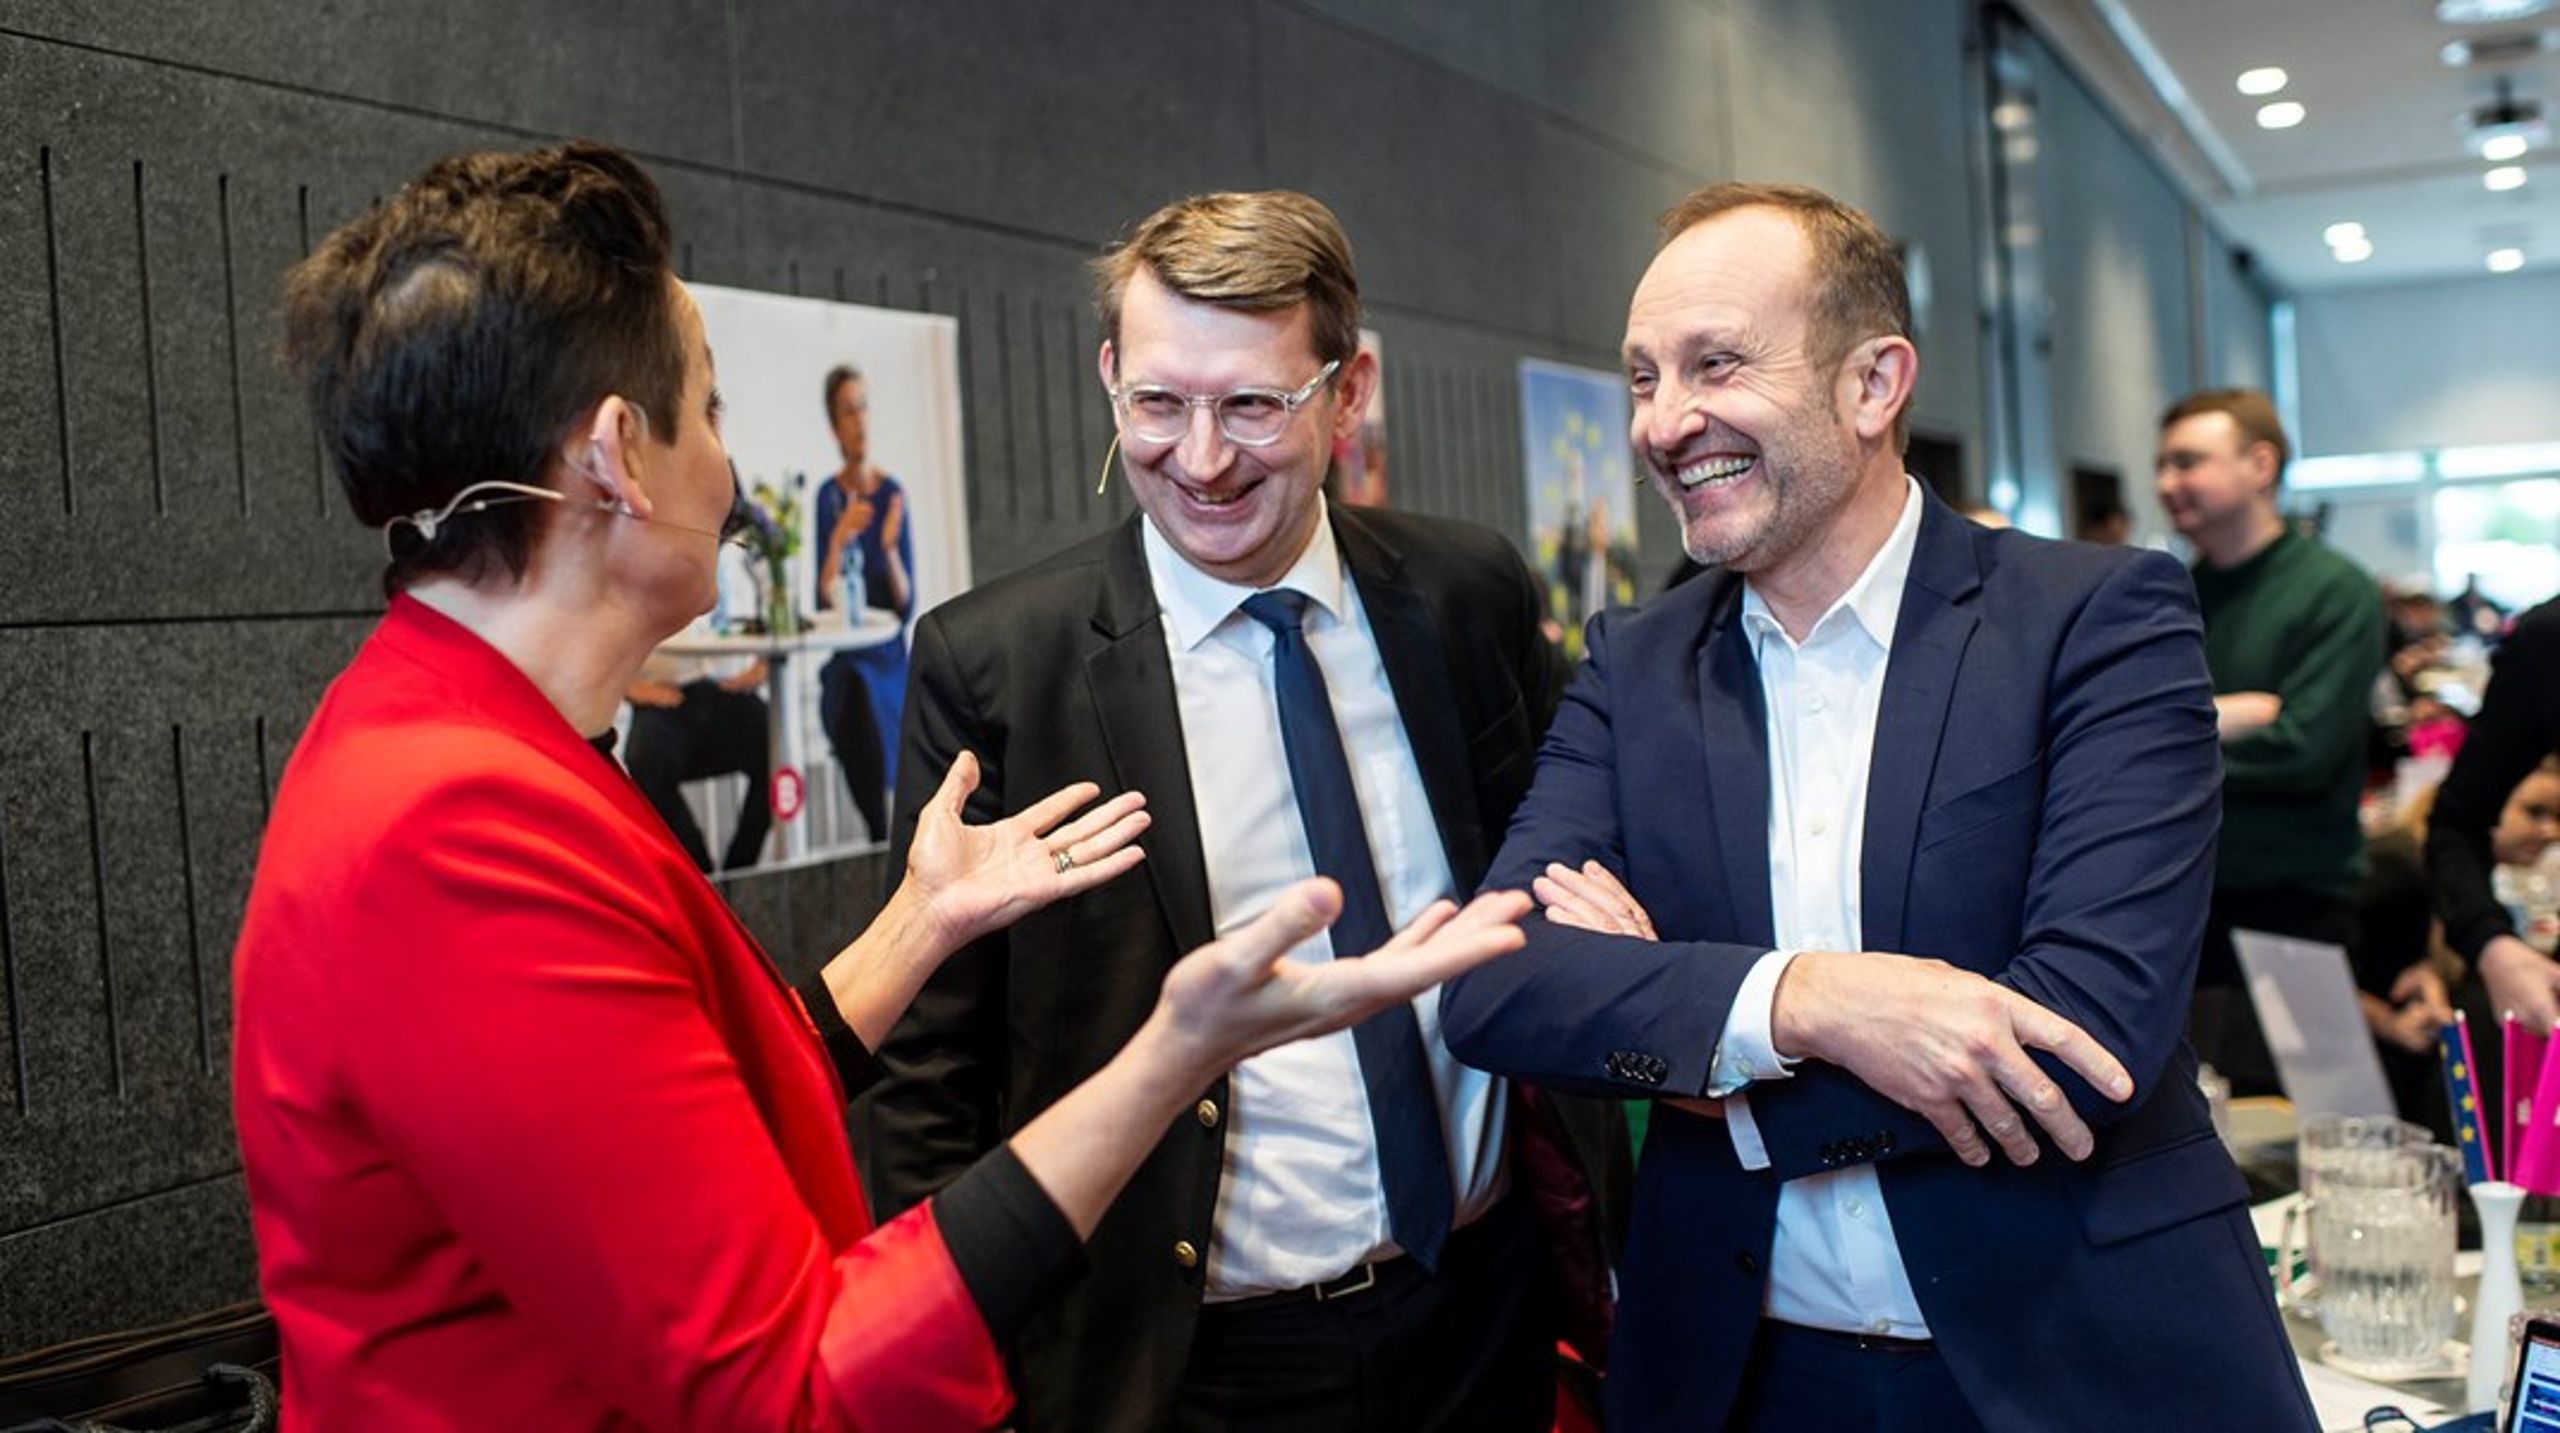 Troels Lund Poulsens och&nbsp;Martin Lidegaards partier Venstre respektive Radikale är på väg att bilda en liberal allians med Moderaterne inför EU-valet.&nbsp;